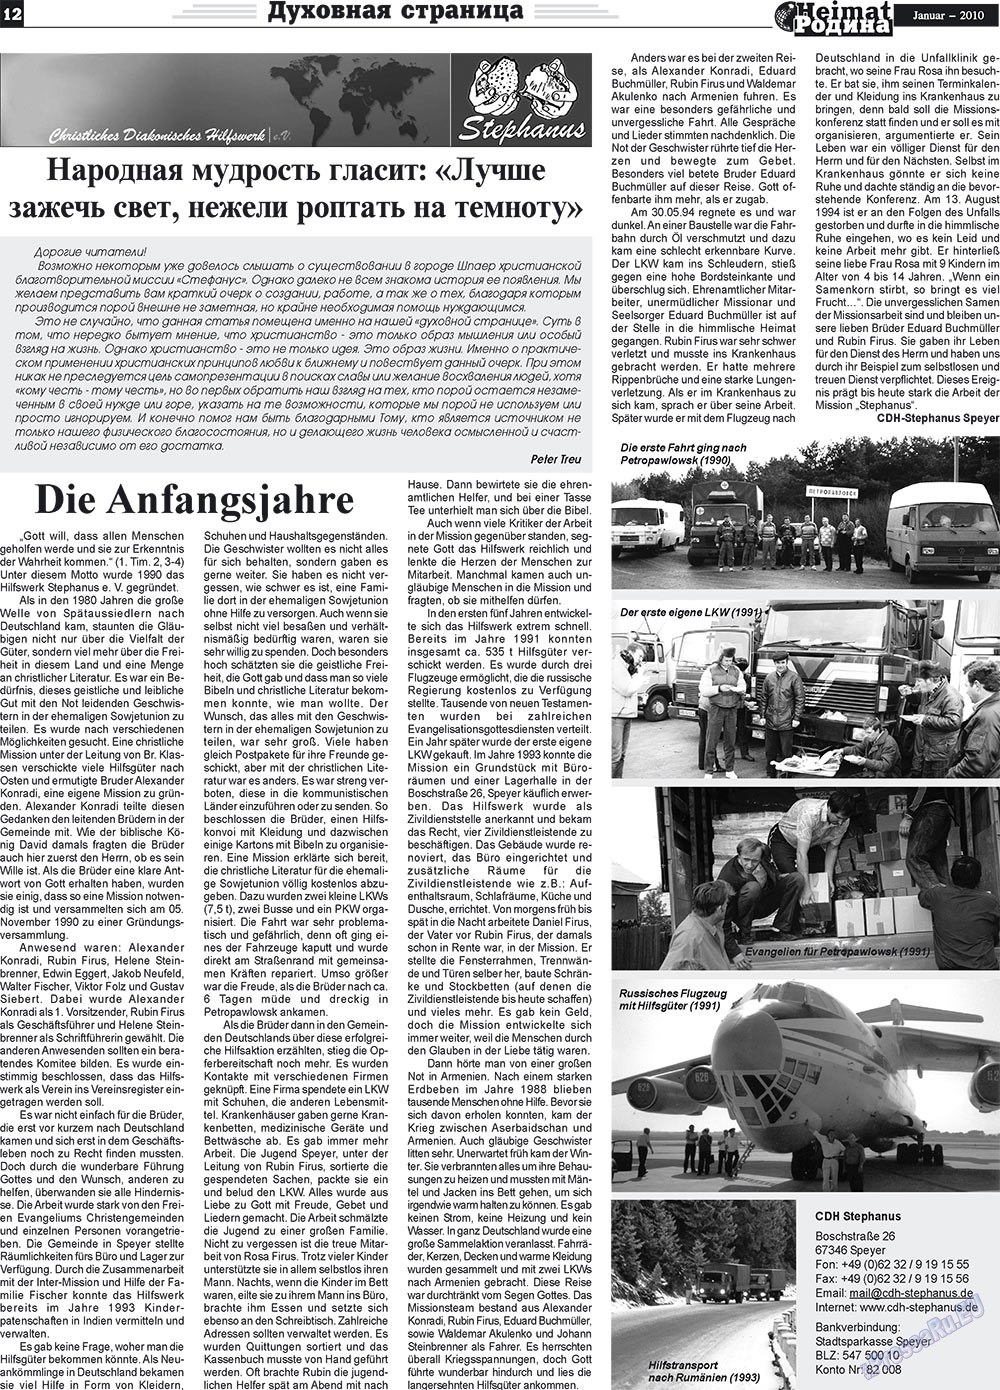 Heimat-Родина (газета). 2010 год, номер 1, стр. 12